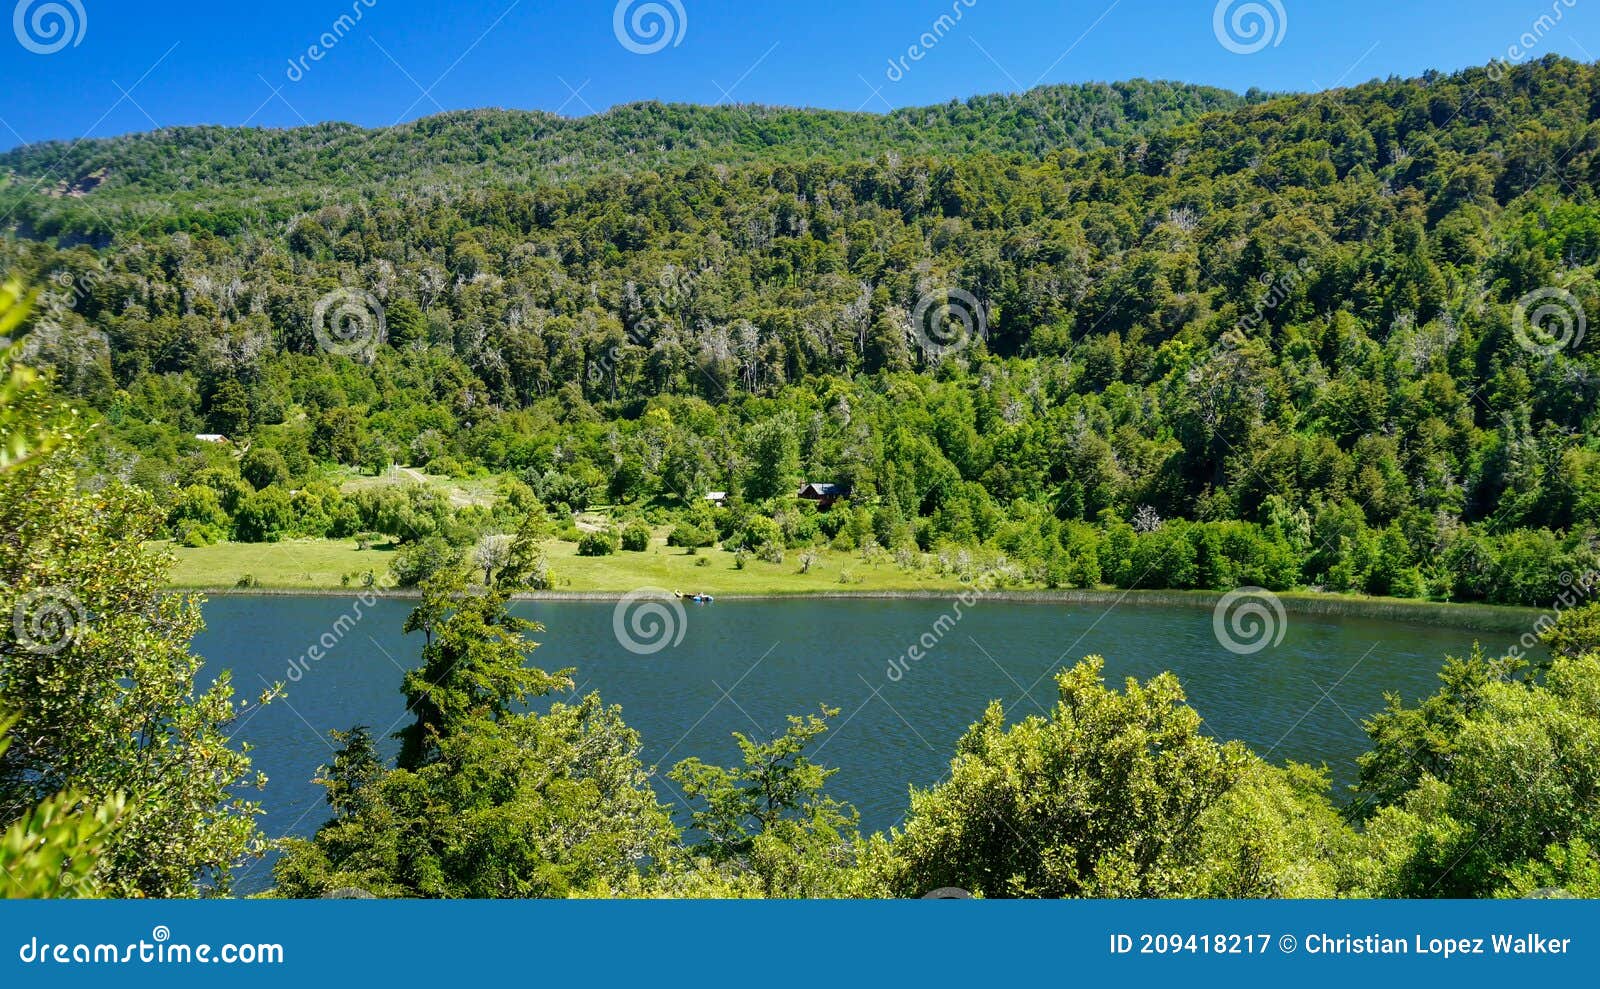 landscape of lake rosales